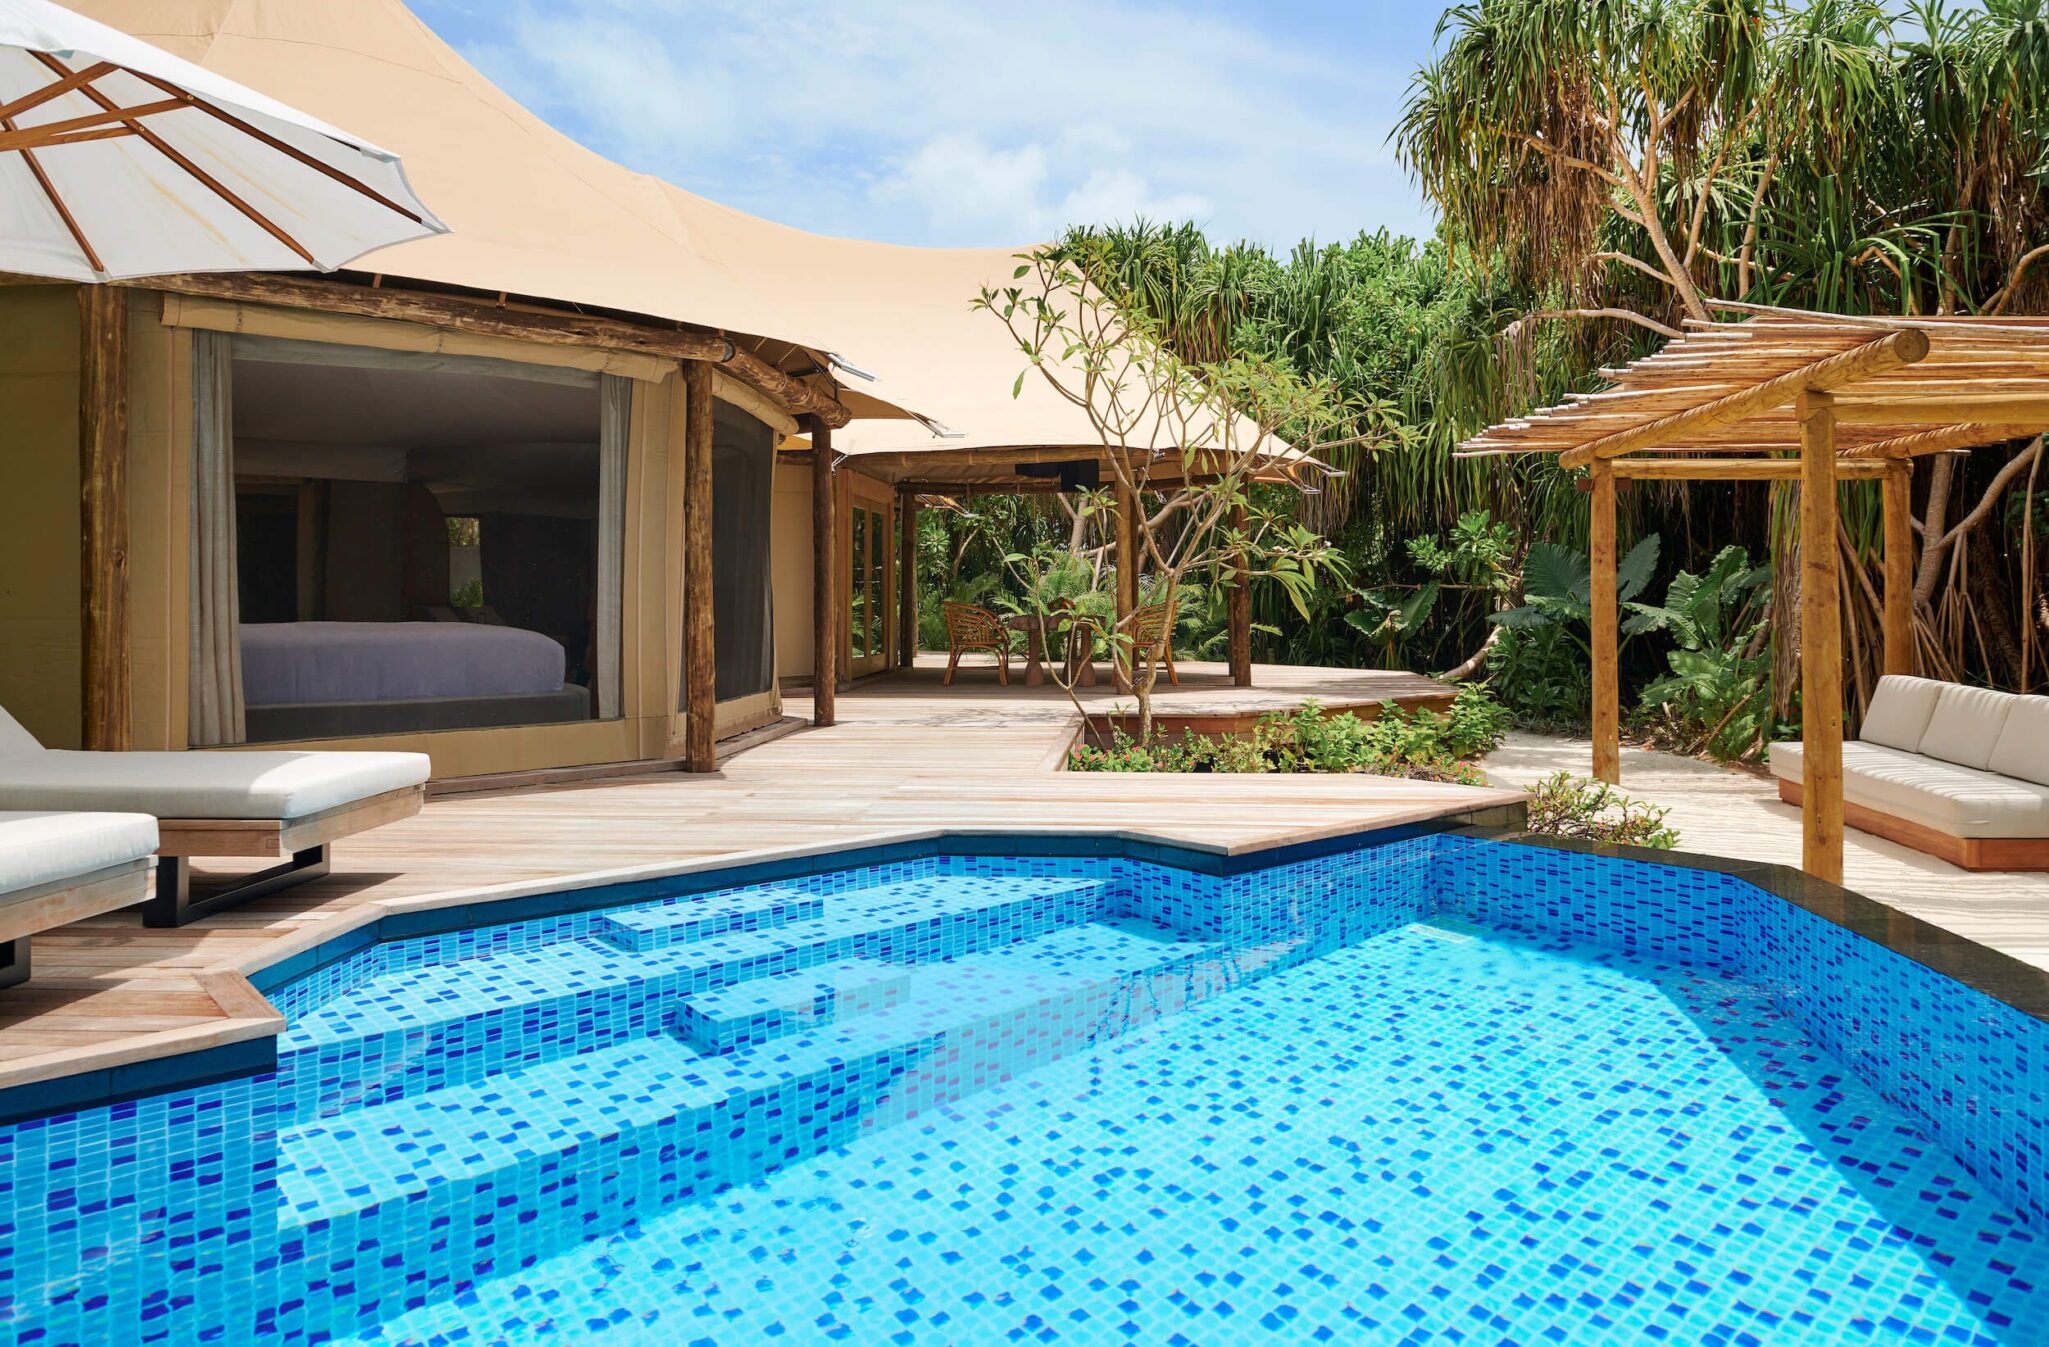 Safari Tent Villa with Private Pool